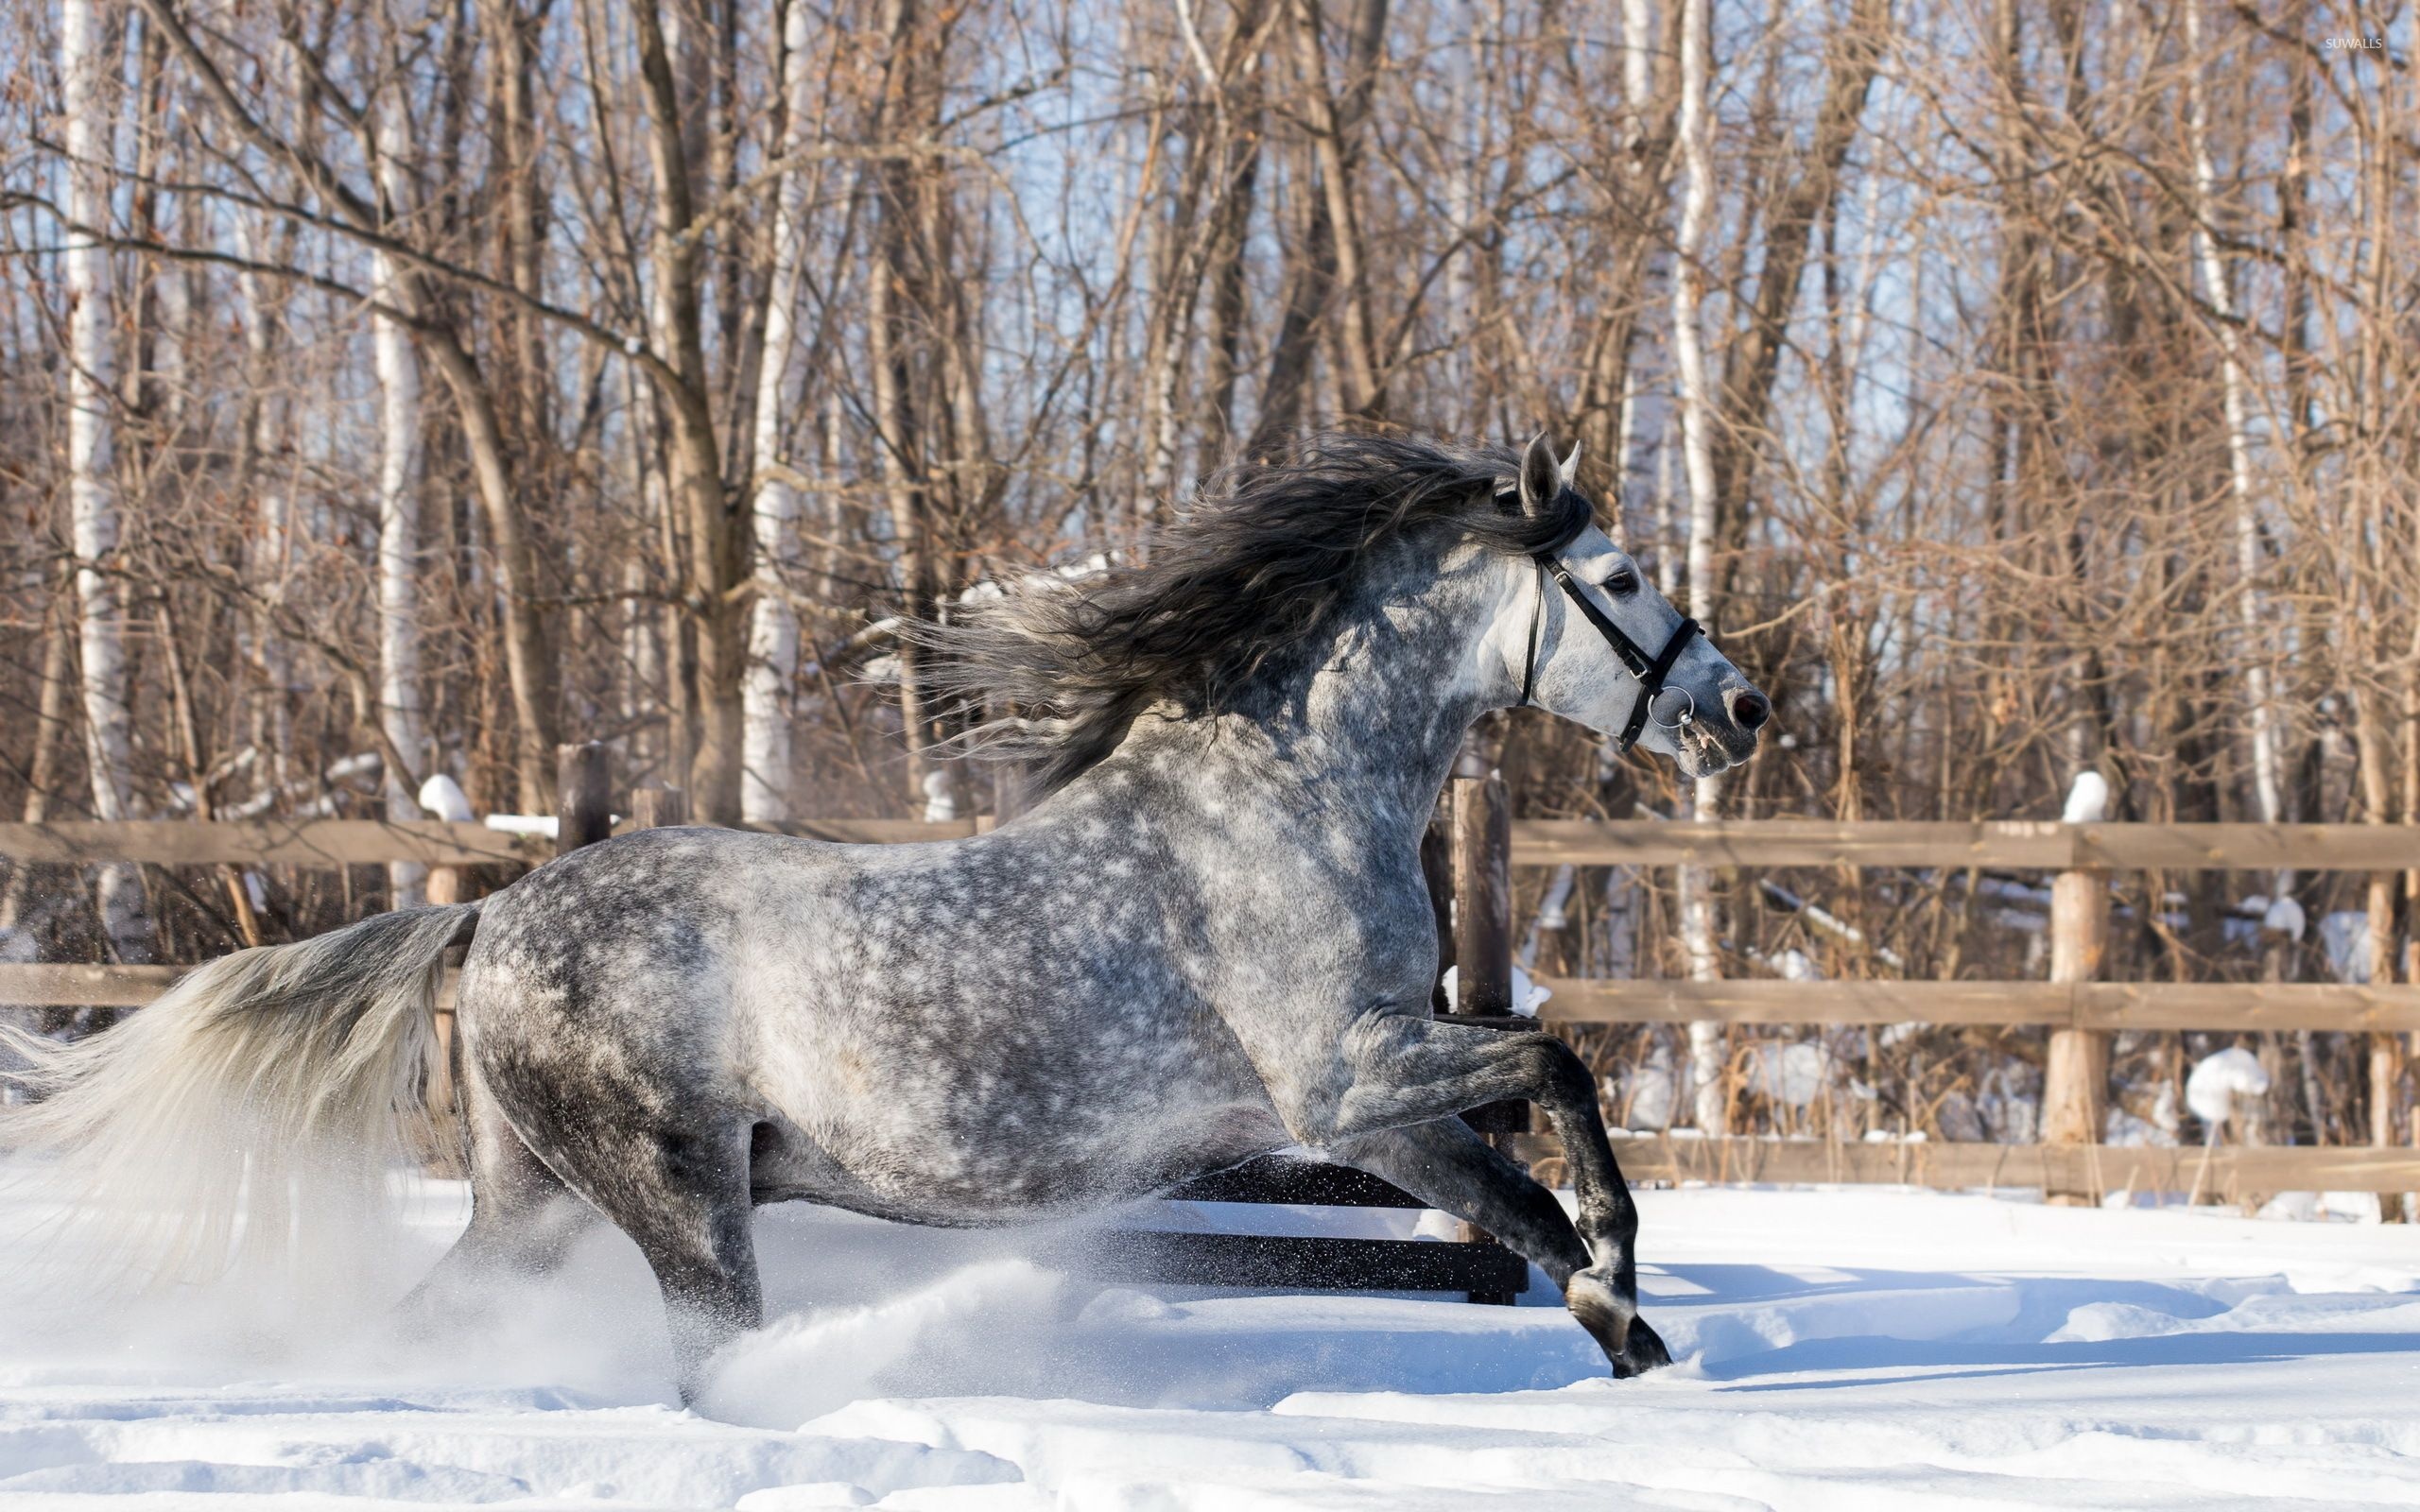 Winter's grace, Snowy horses, Majestic in white, Serene beauty, 2560x1600 HD Desktop